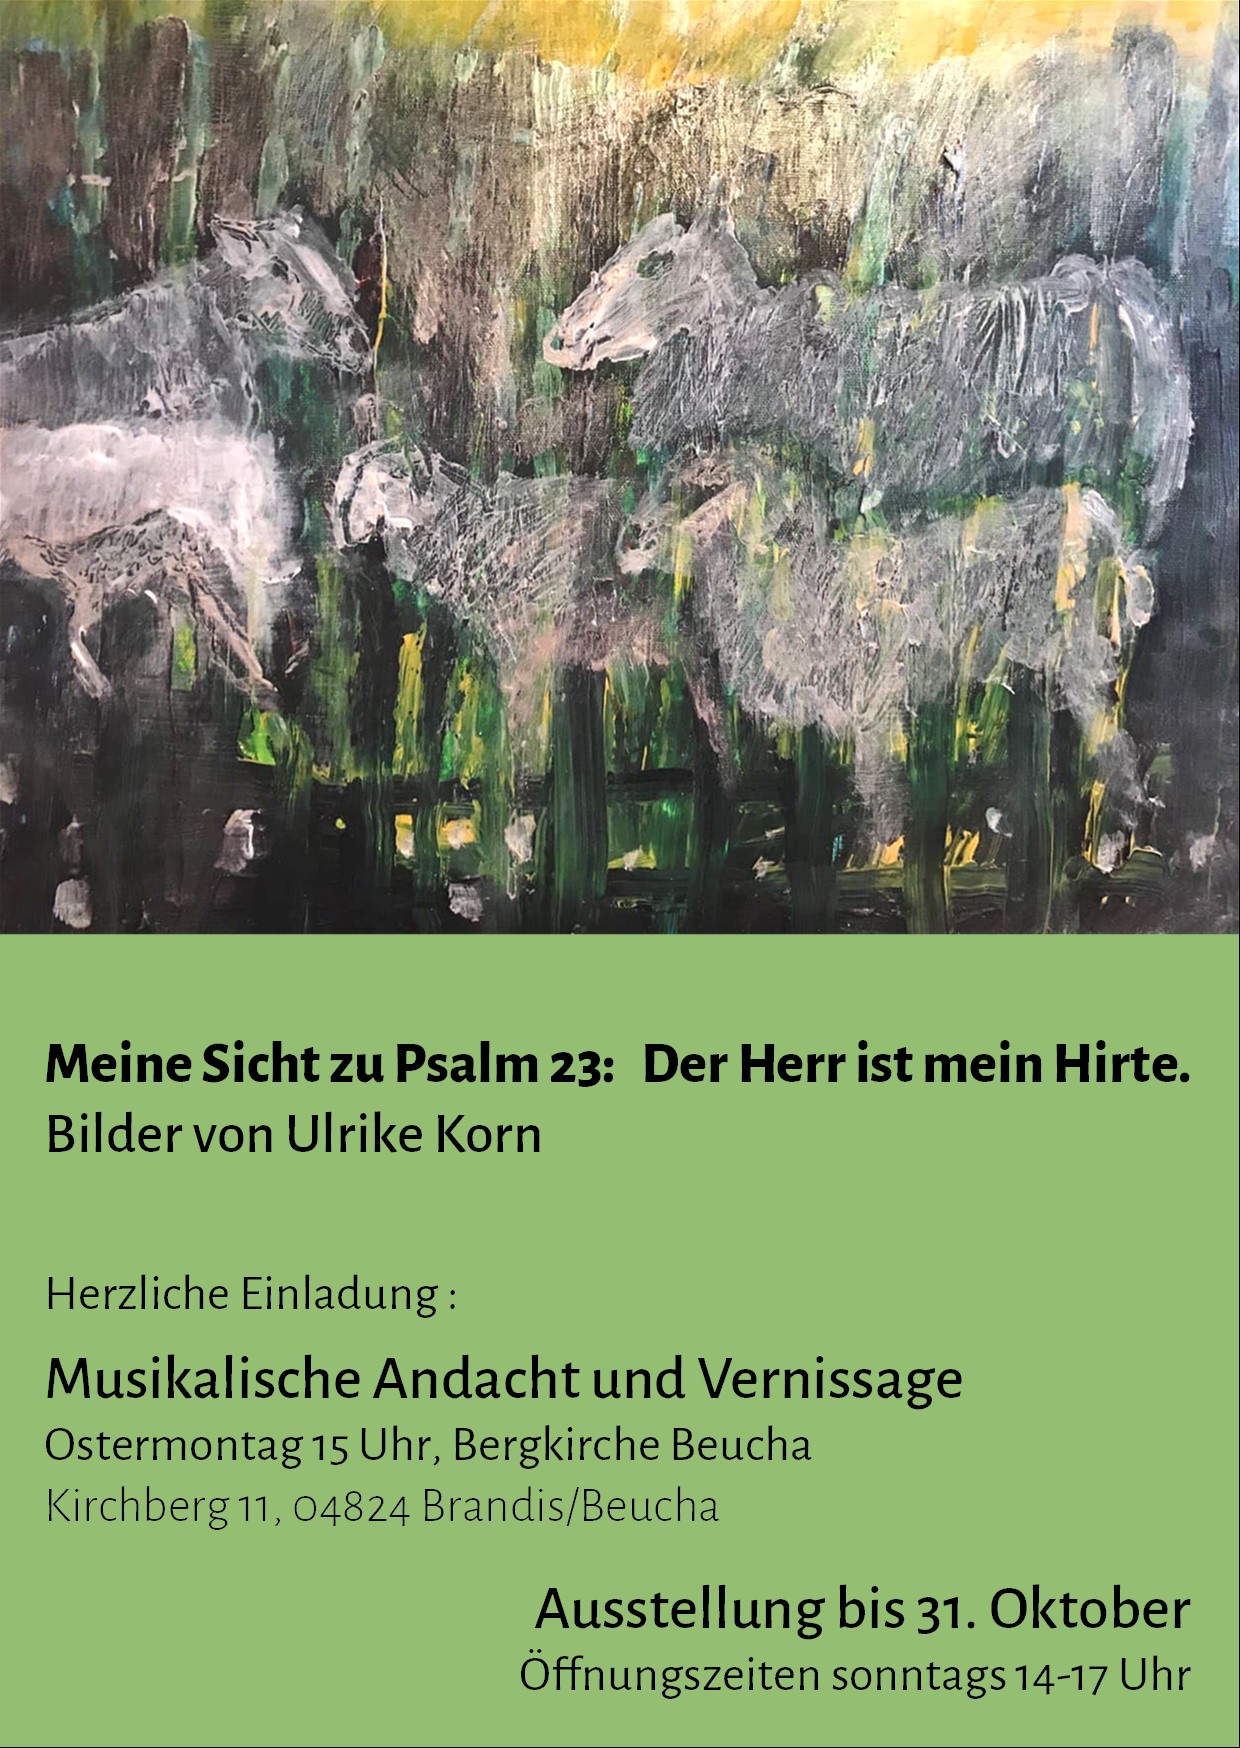 Ausstellung Meine Sicht zu Psalm 23, Bergkirche Beucha, bis 31.10.2021